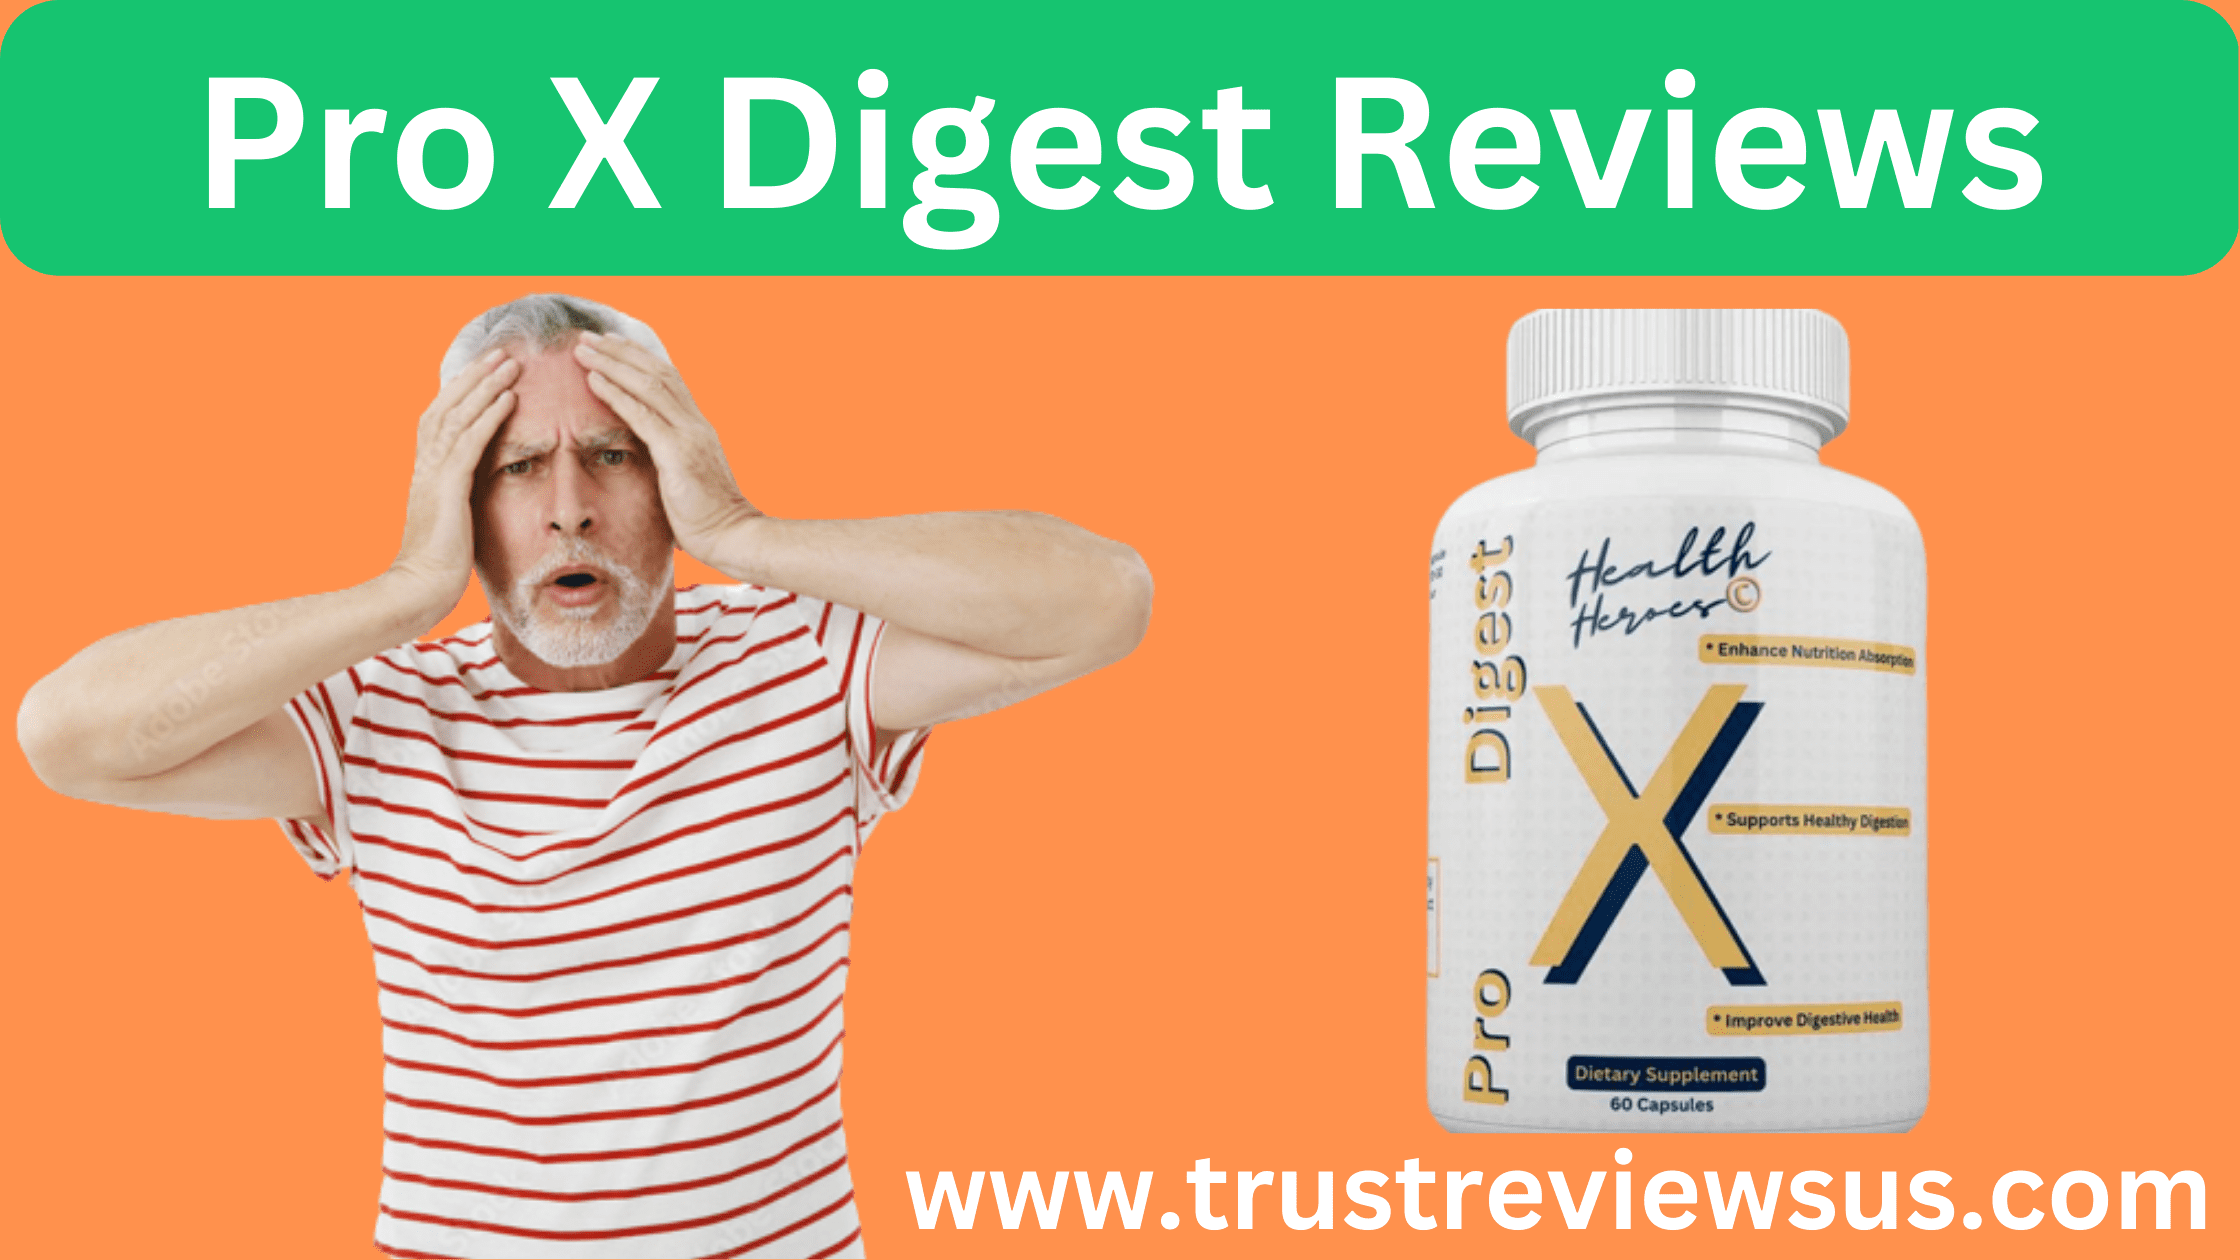 Pro X Digest Reviews